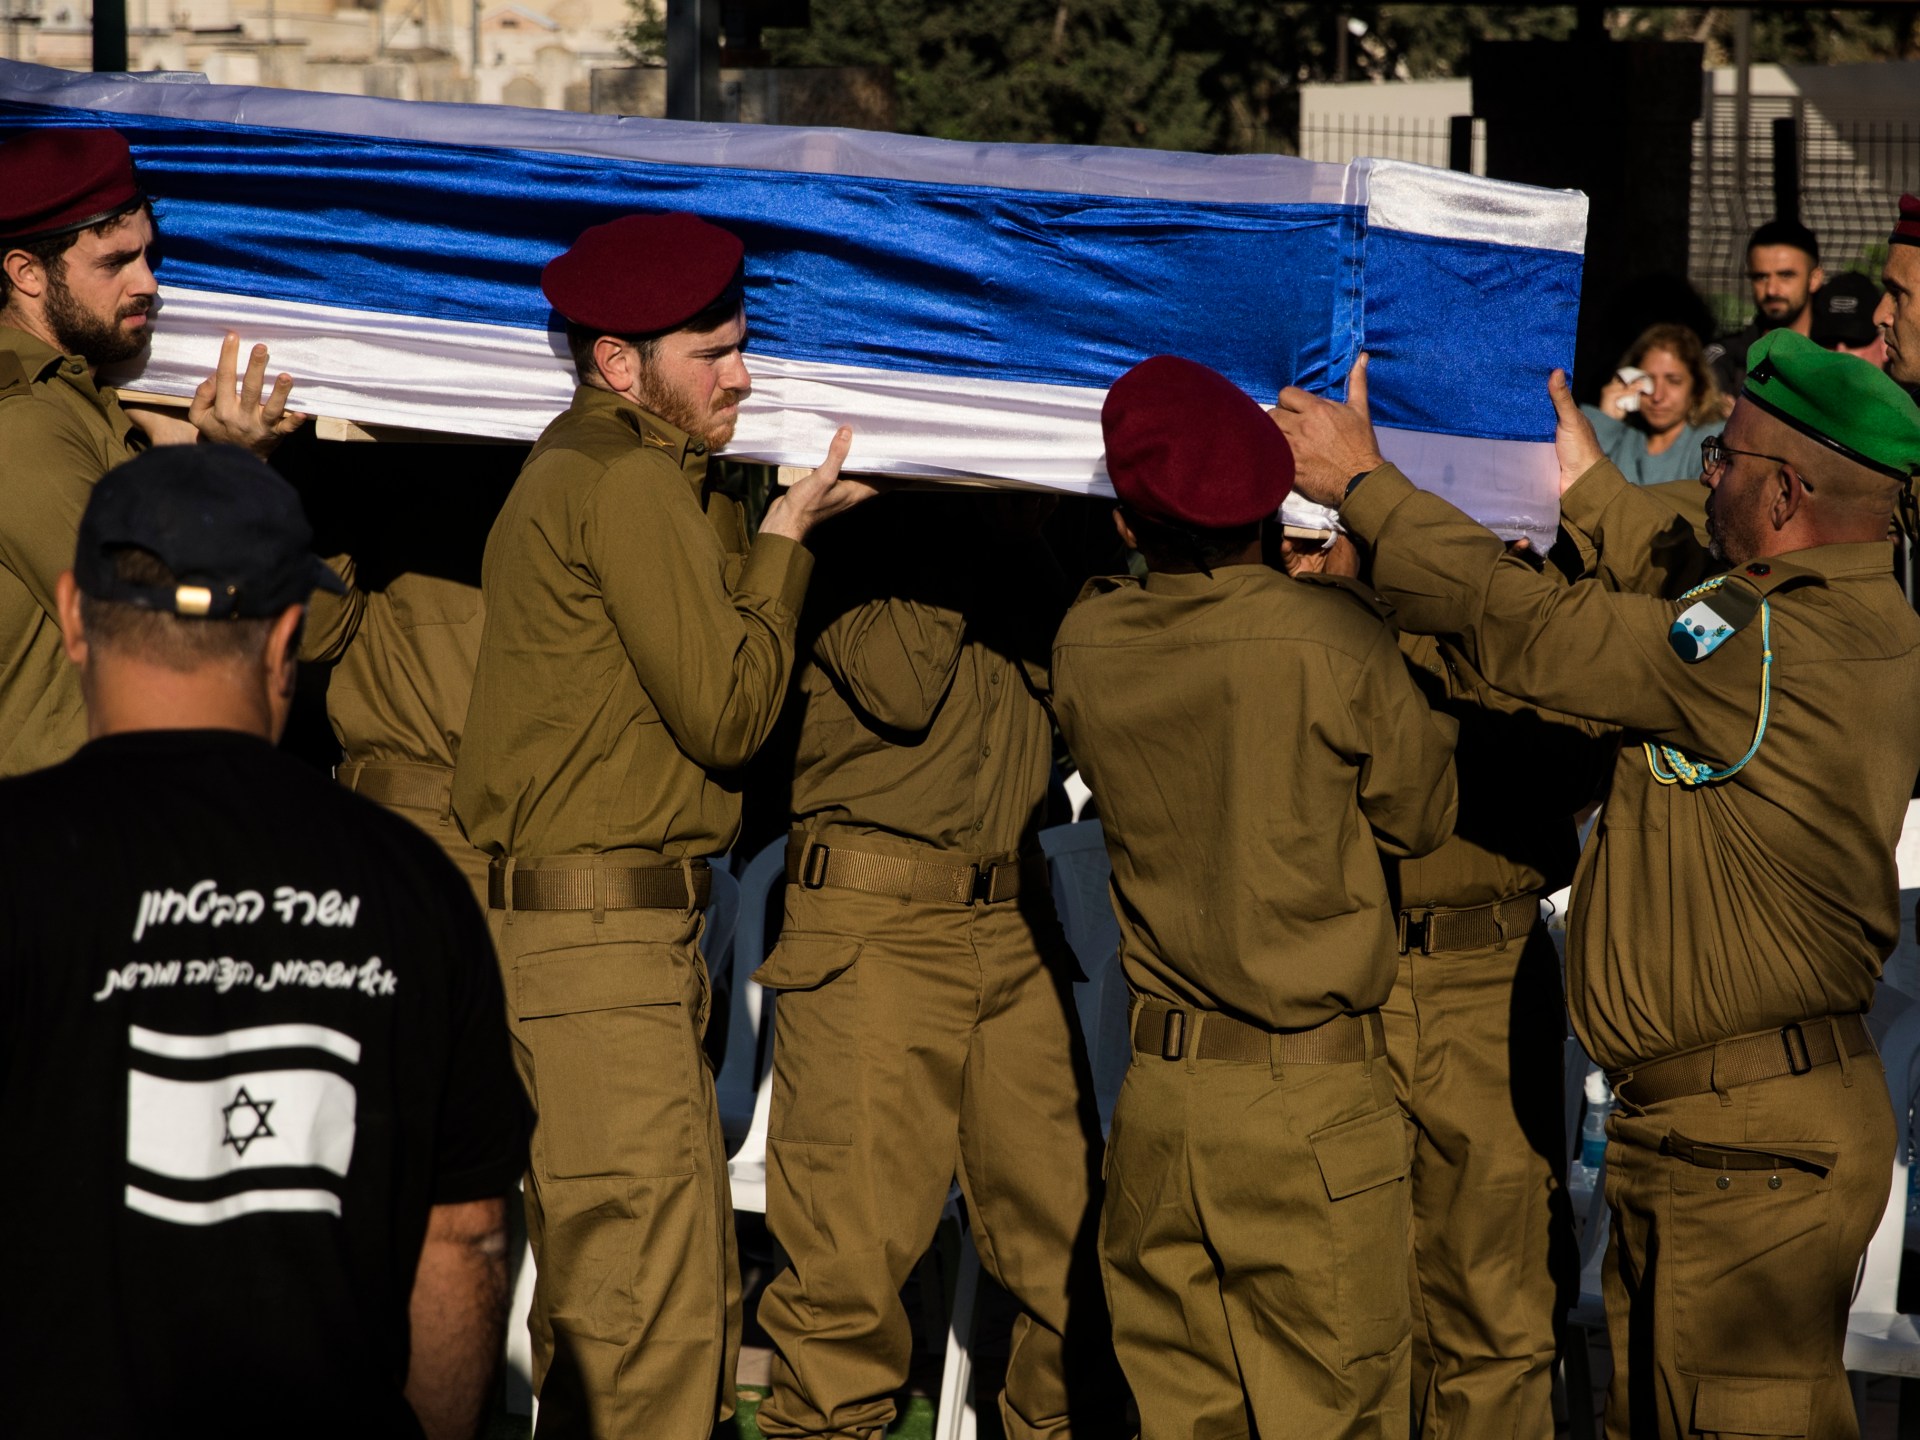 إسرائيل تعترف بمقتل ضابط وجندي في معارك غزة | أخبار – البوكس نيوز